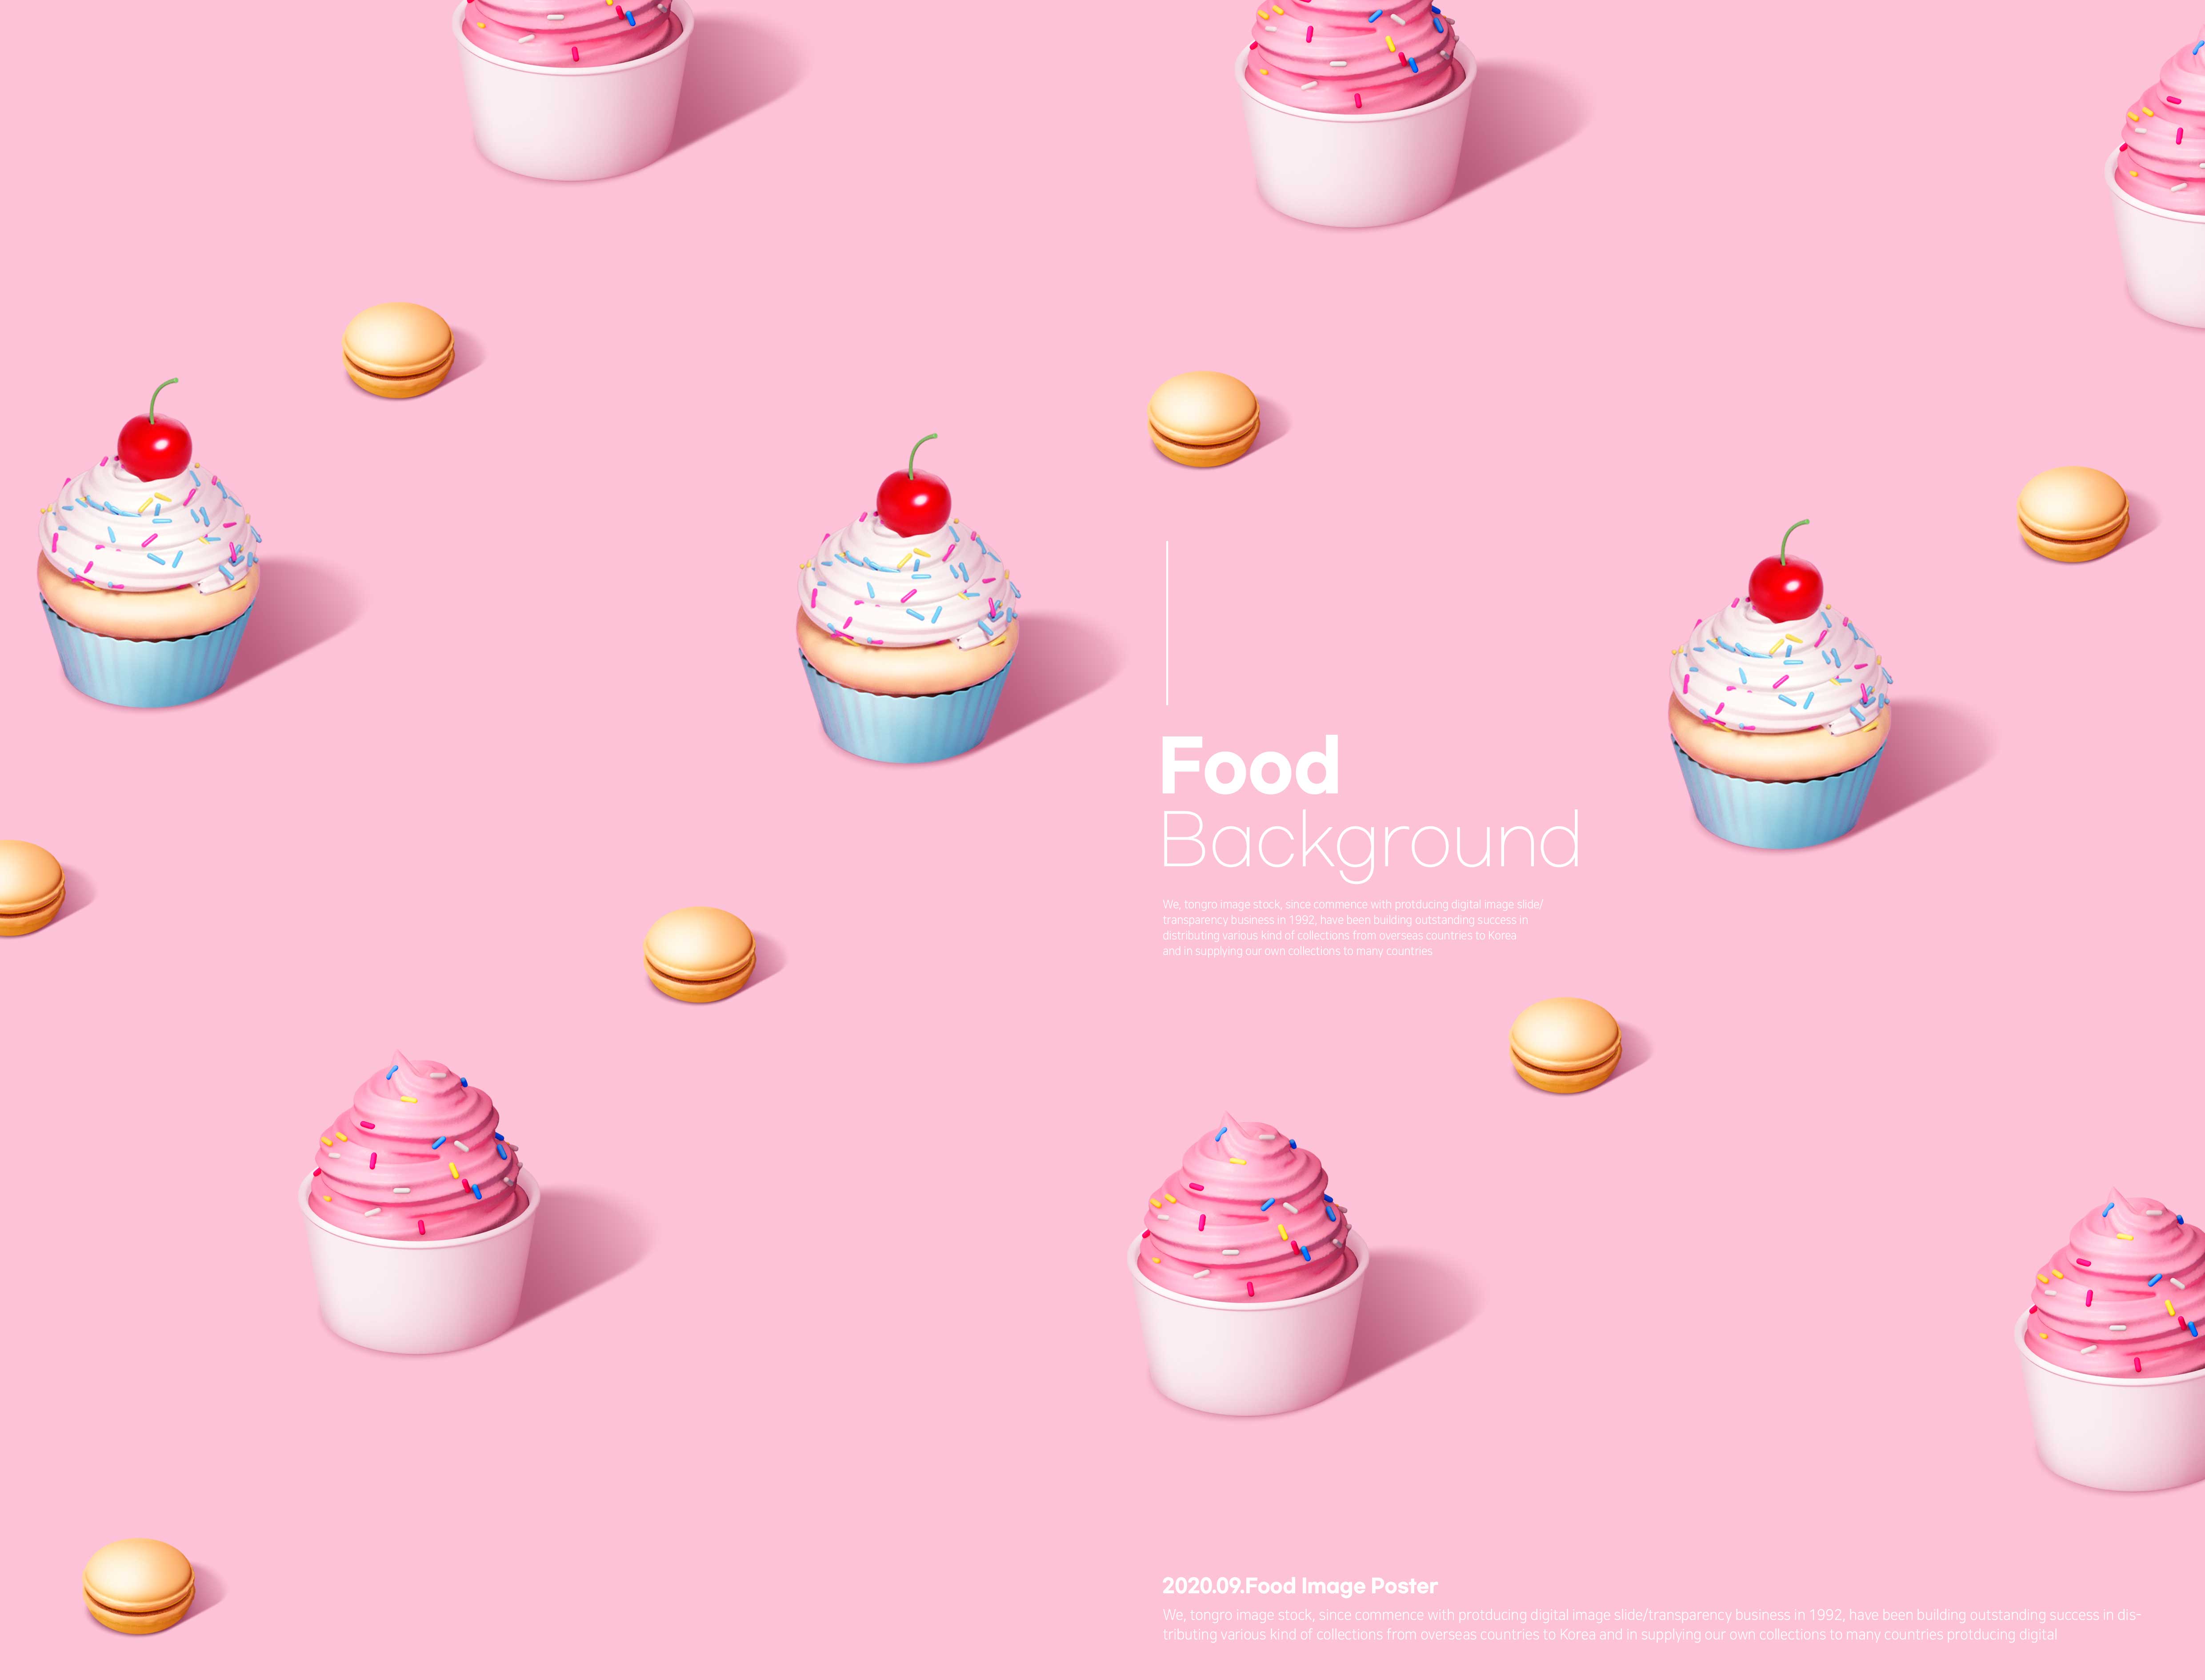 樱桃小蛋糕食品海报psd素材设计素材模板